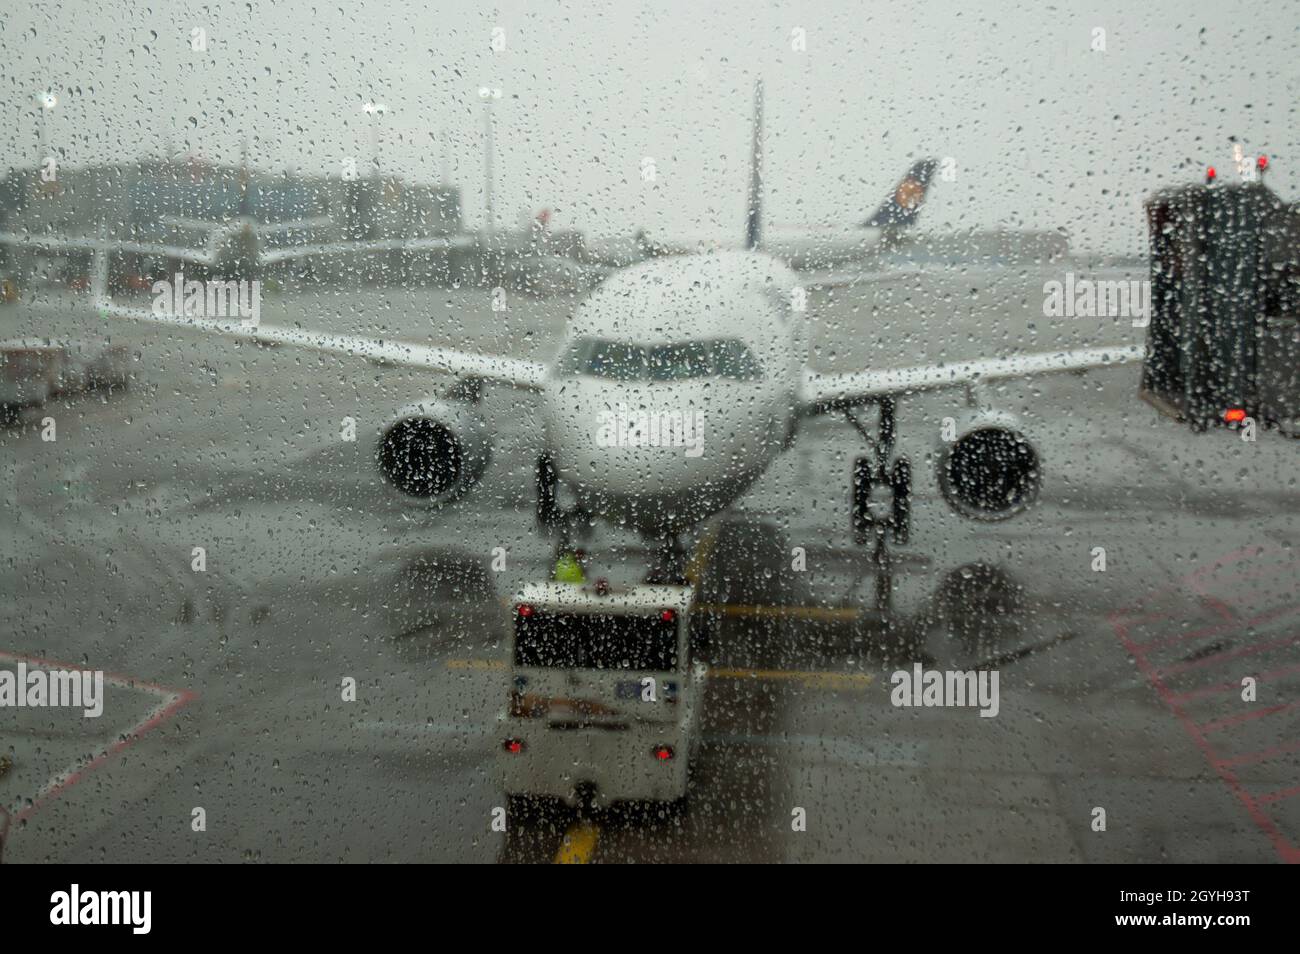 Avion sur piste vu par fenêtre humide le jour de pluie - concentrez-vous sur les gouttes d'eau sur la fenêtre Banque D'Images